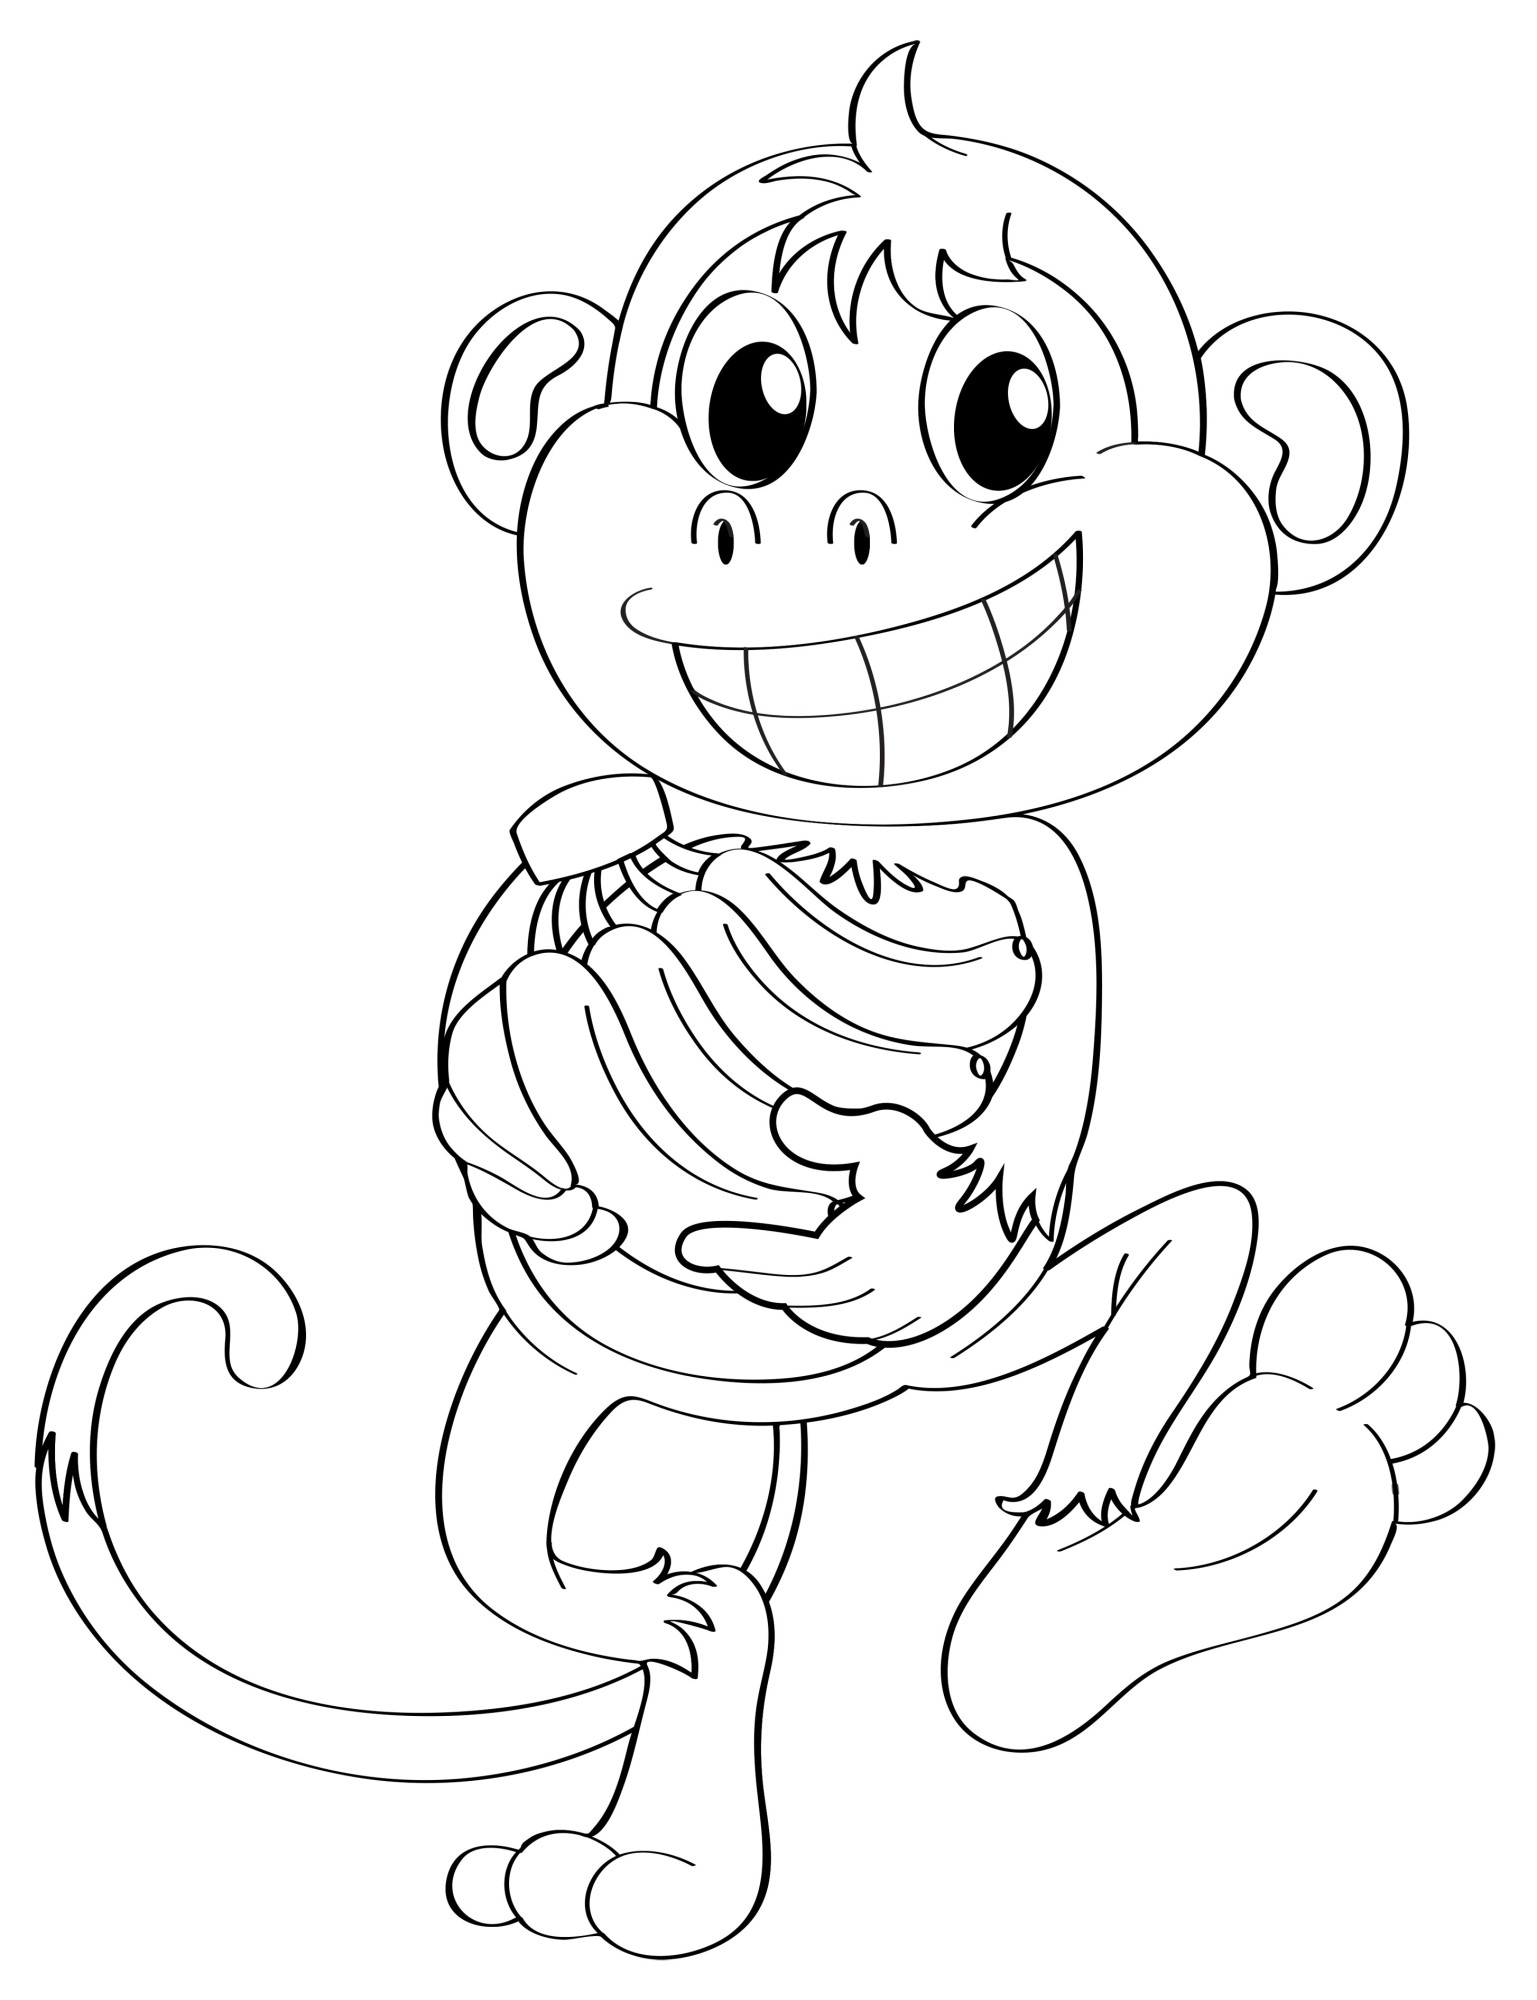 Раскраска для детей: обезьяна с широкой улыбкой на лице несет в руках связку бананов